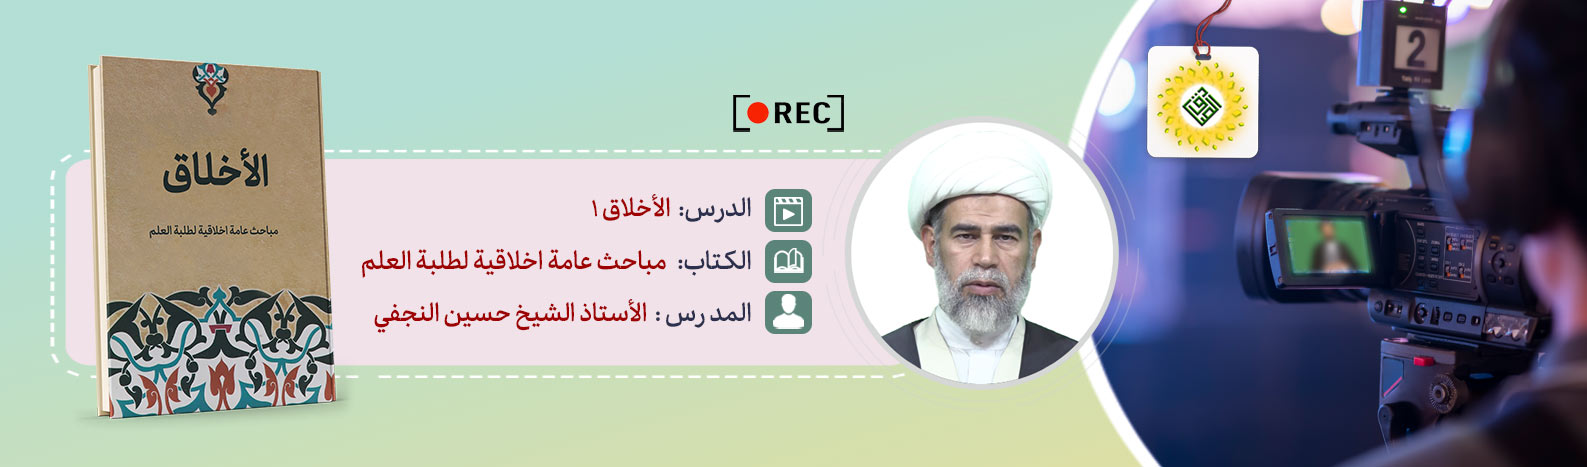 تسجيل درس الأخلاق للأستاذ الشيخ حسين النجفي